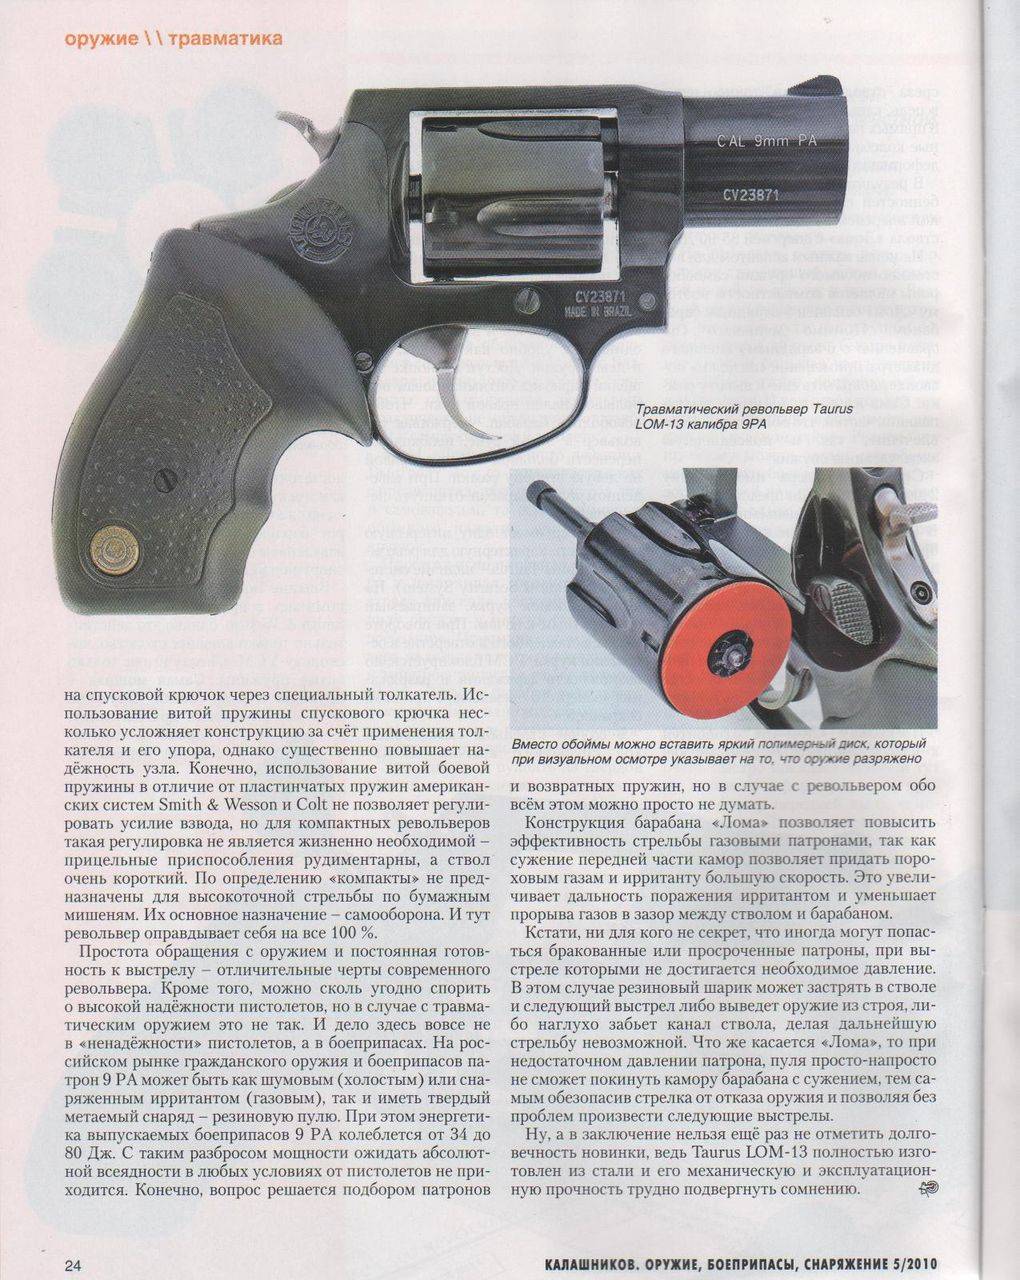 Револьвер taurus lom-13 - бразильский травматический пистолет ⭐ doblest.club